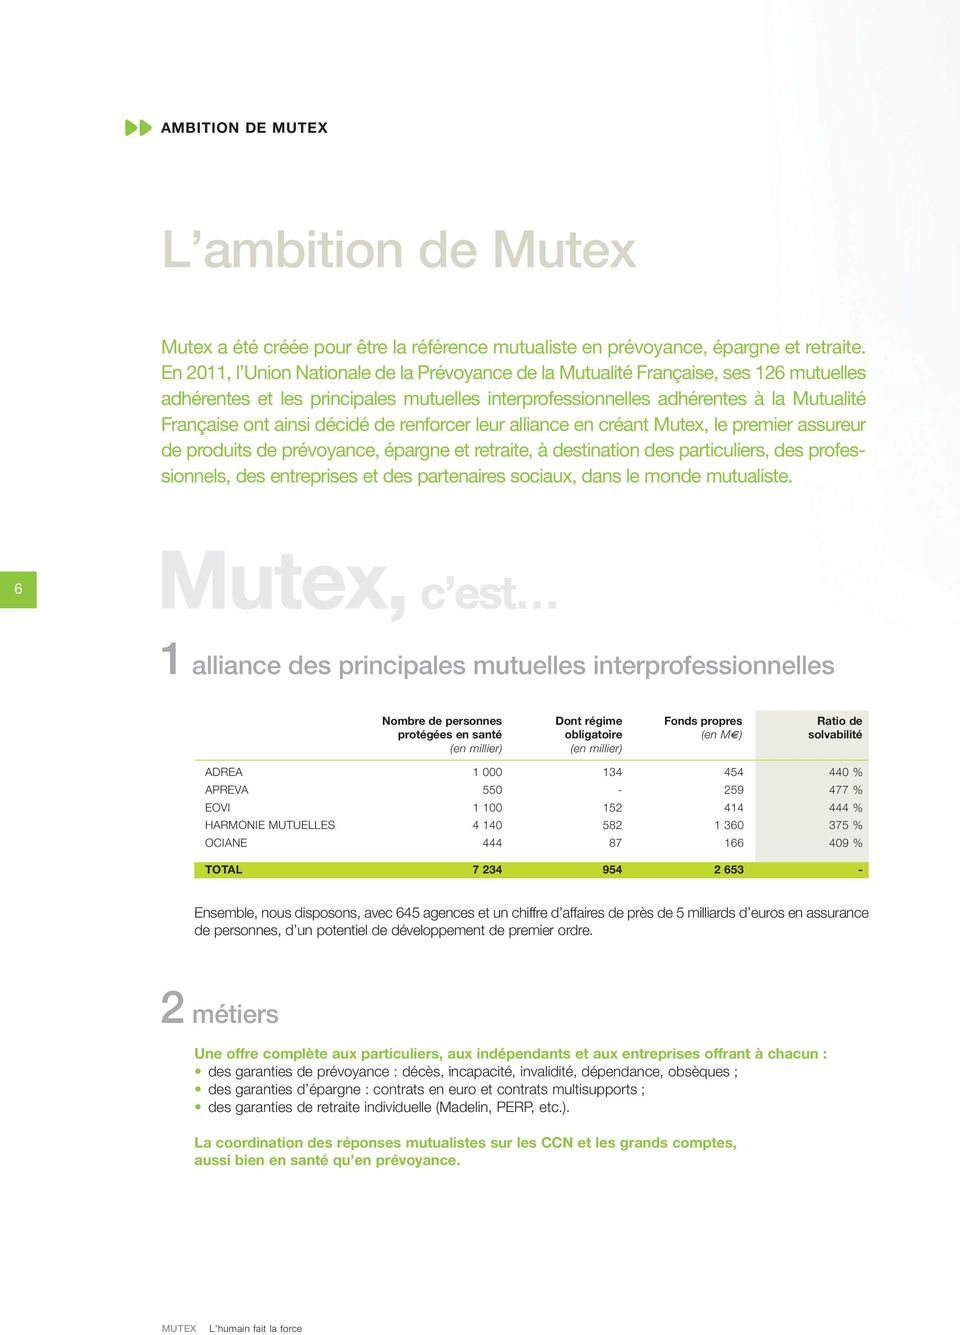 décidé de renforcer leur alliance en créant Mutex, le premier assureur de produits de prévoyance, épargne et retraite, à destination des particuliers, des professionnels, des entreprises et des